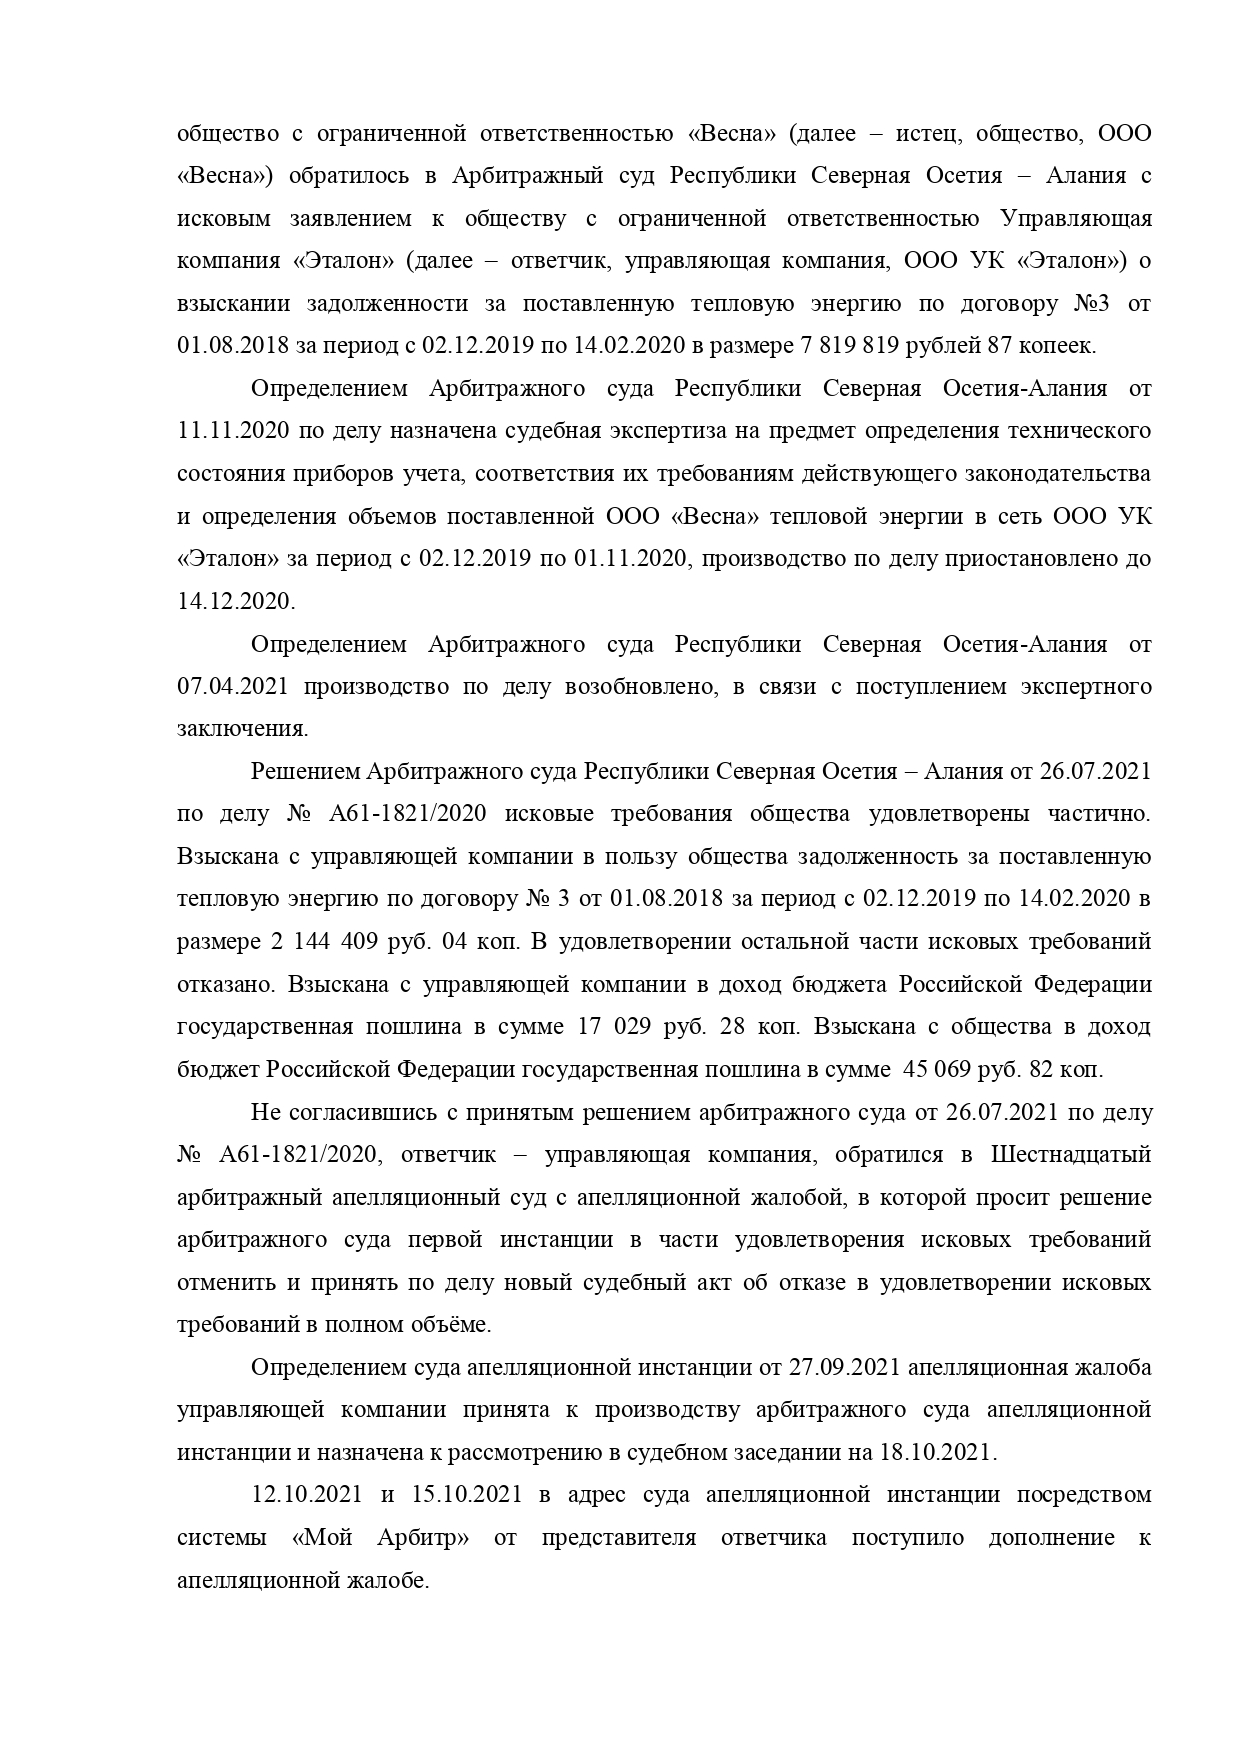 Шестнадцатый арбитражный апелляционный суд вынес постановление по делу №А61-1821/2020